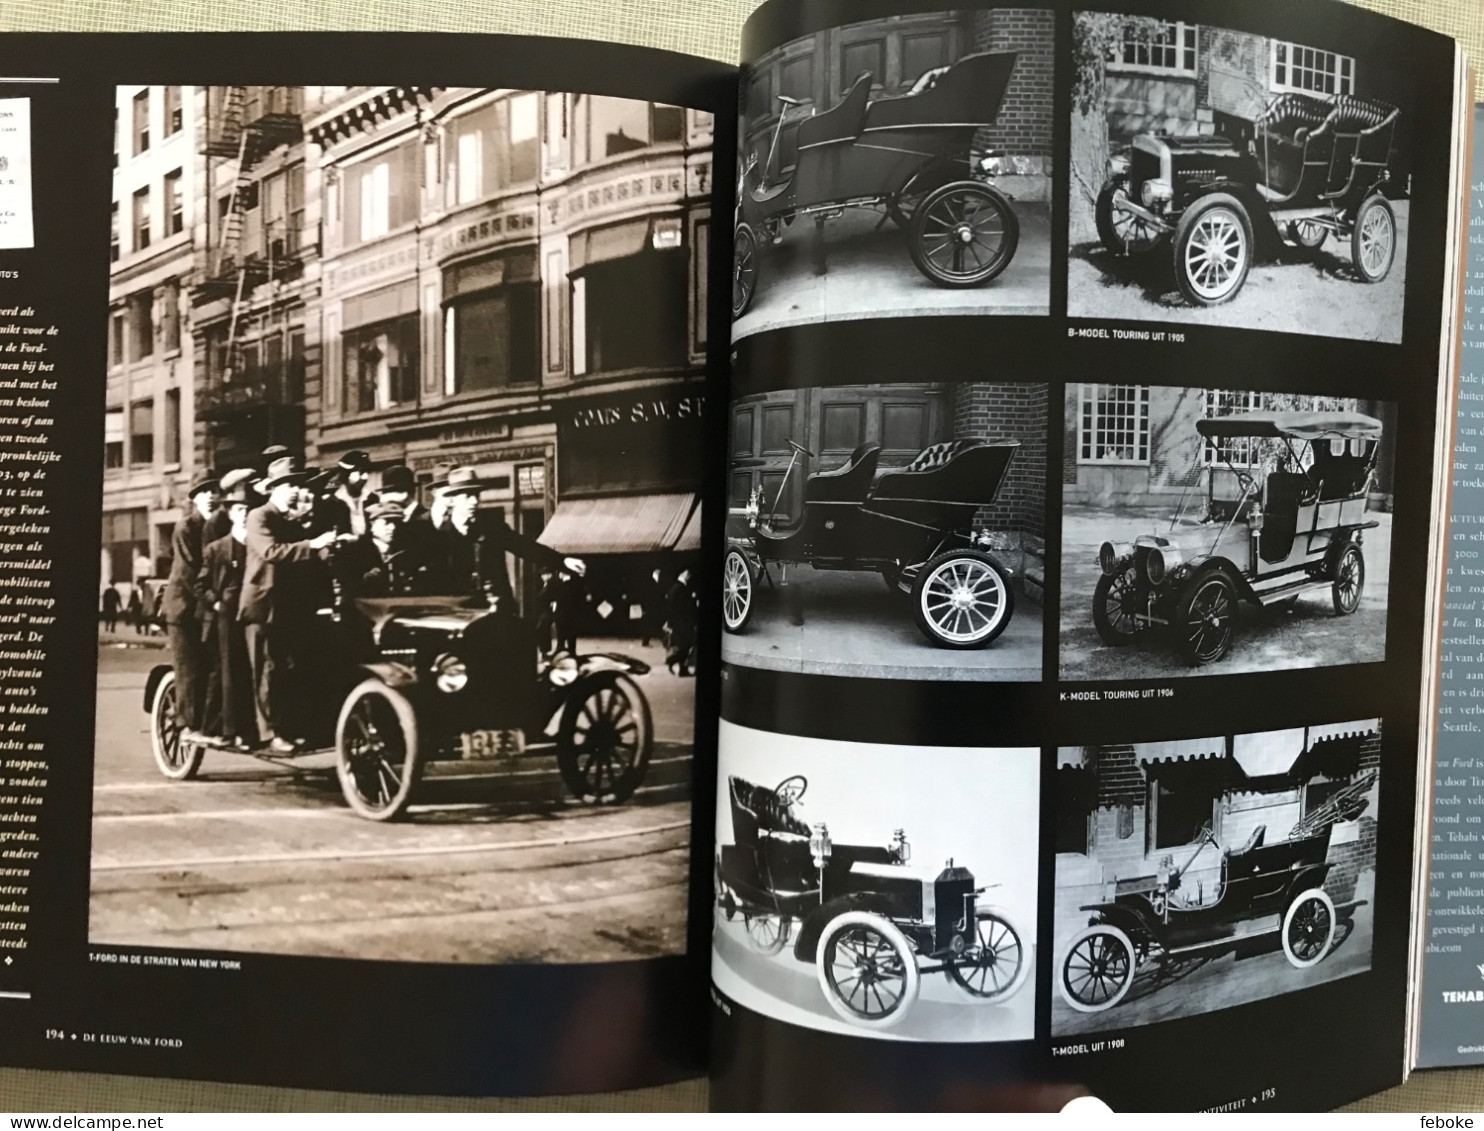 FORD GENK 1964-2014 + DE EEUW VAN FORD FORD MOTOR COMPANY 100 YEARS - AUTOINDUSTRIE FORD FOTOBOEKEN GESCHIEDENIS